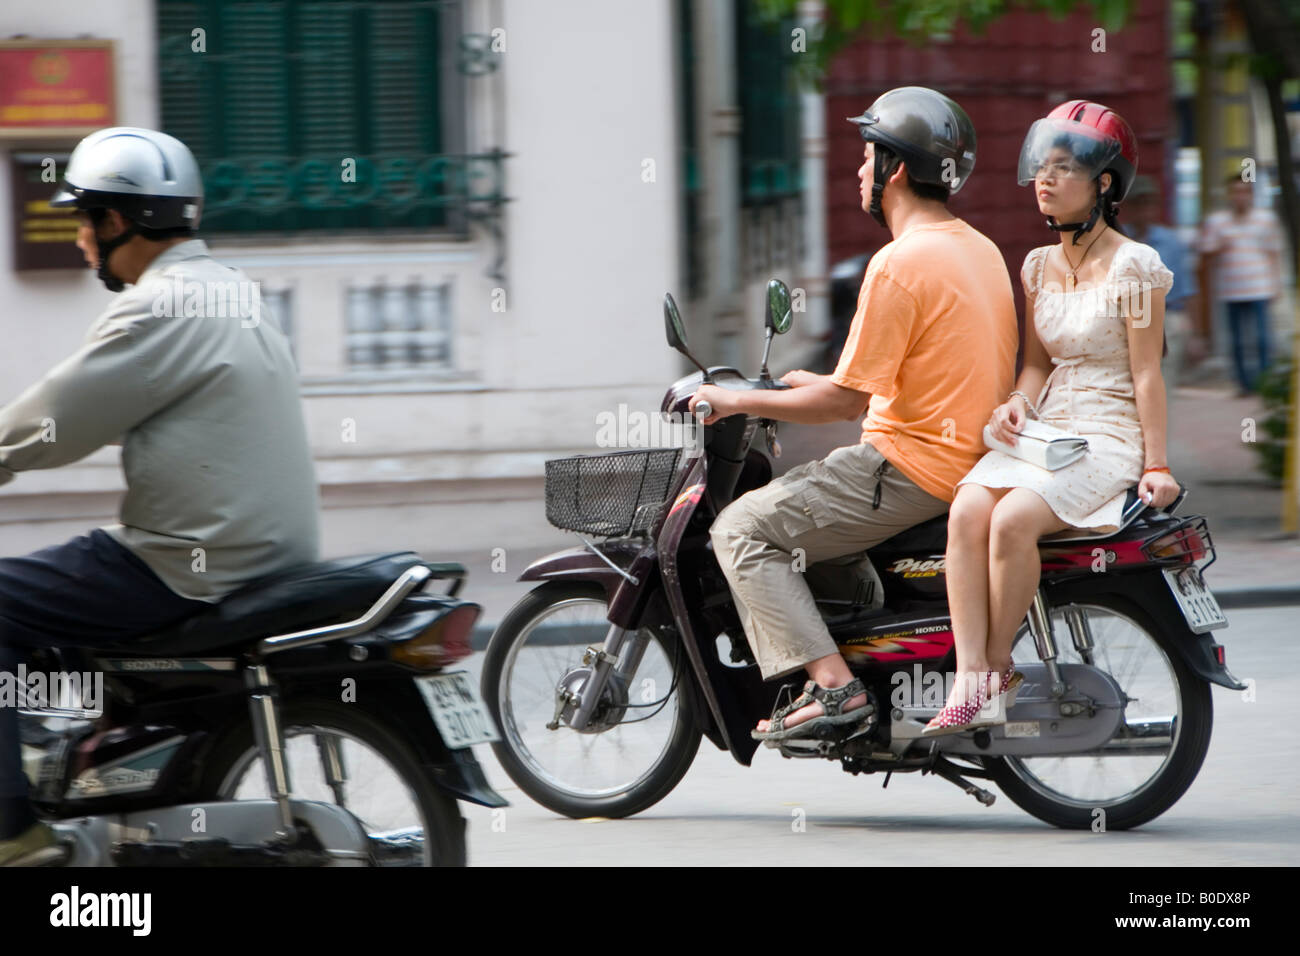 Femme amazone sur une moto. Hang Khay, Hanoi, Vietnam Photo Stock - Alamy